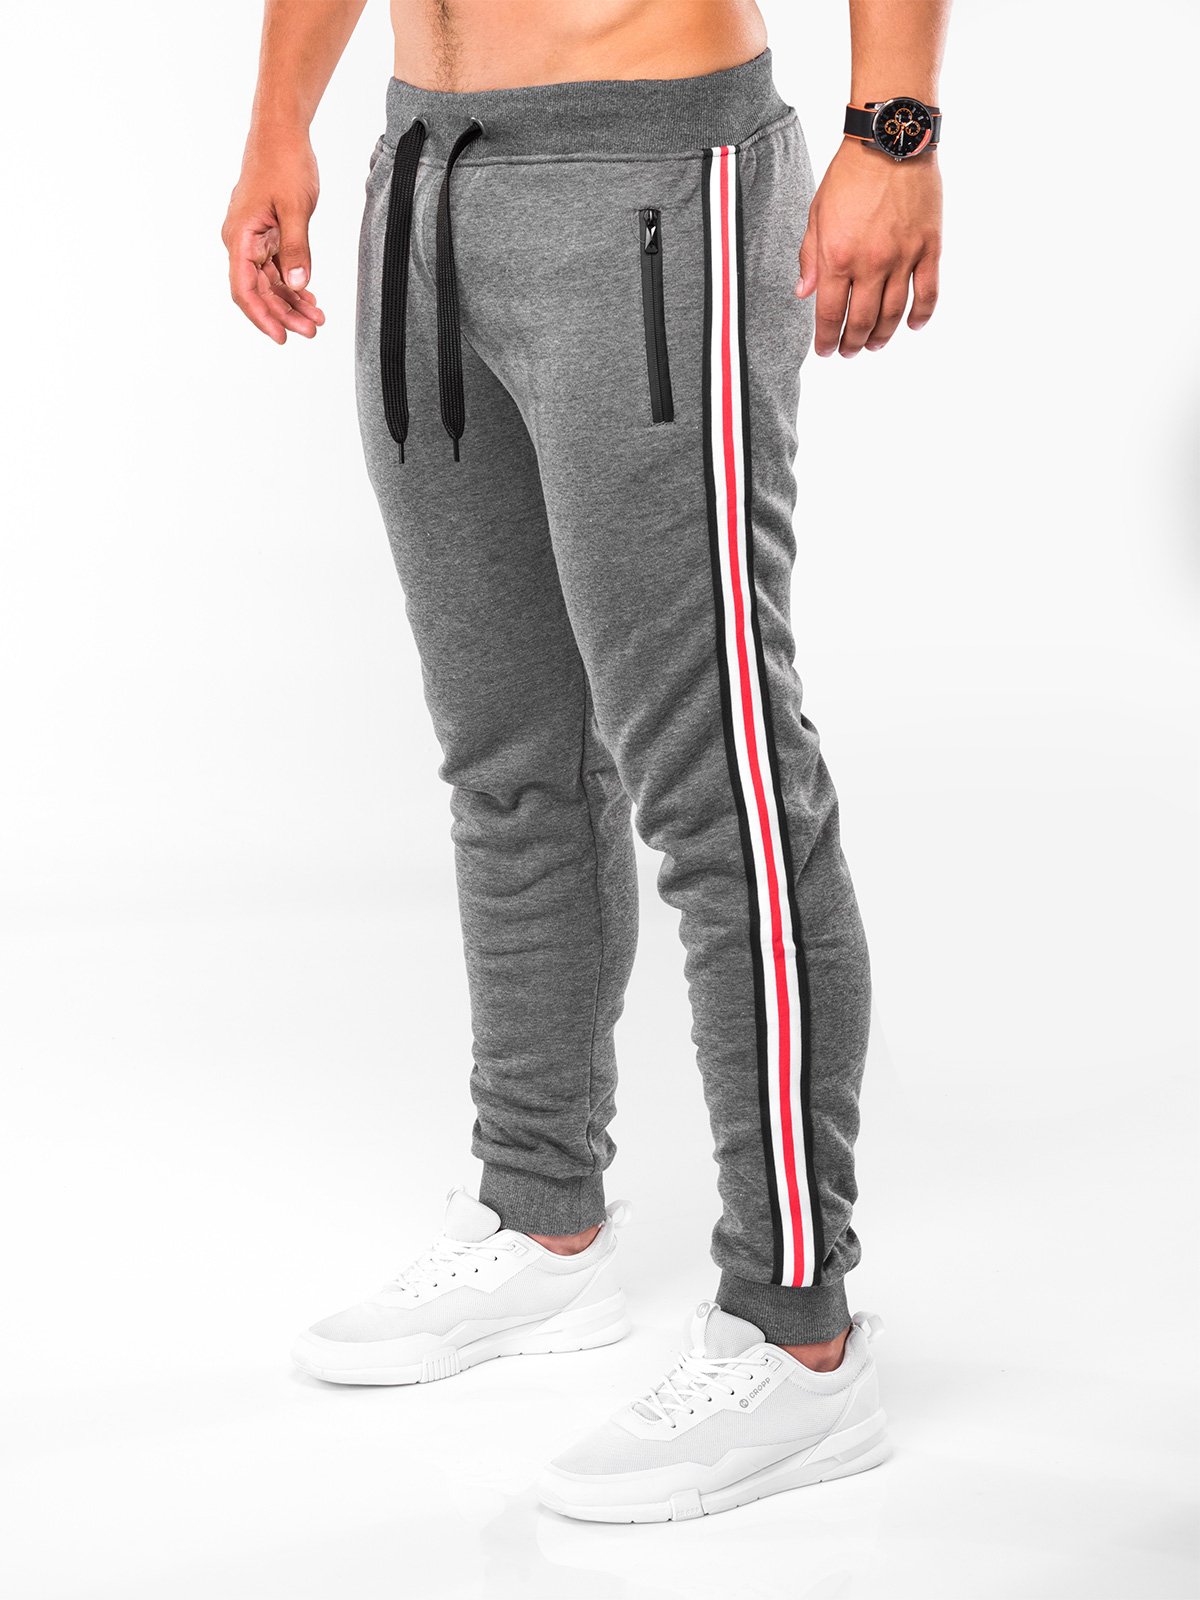 Men's sweatpants P718 - graphite grey | MODONE wholesale - Clothing For Men